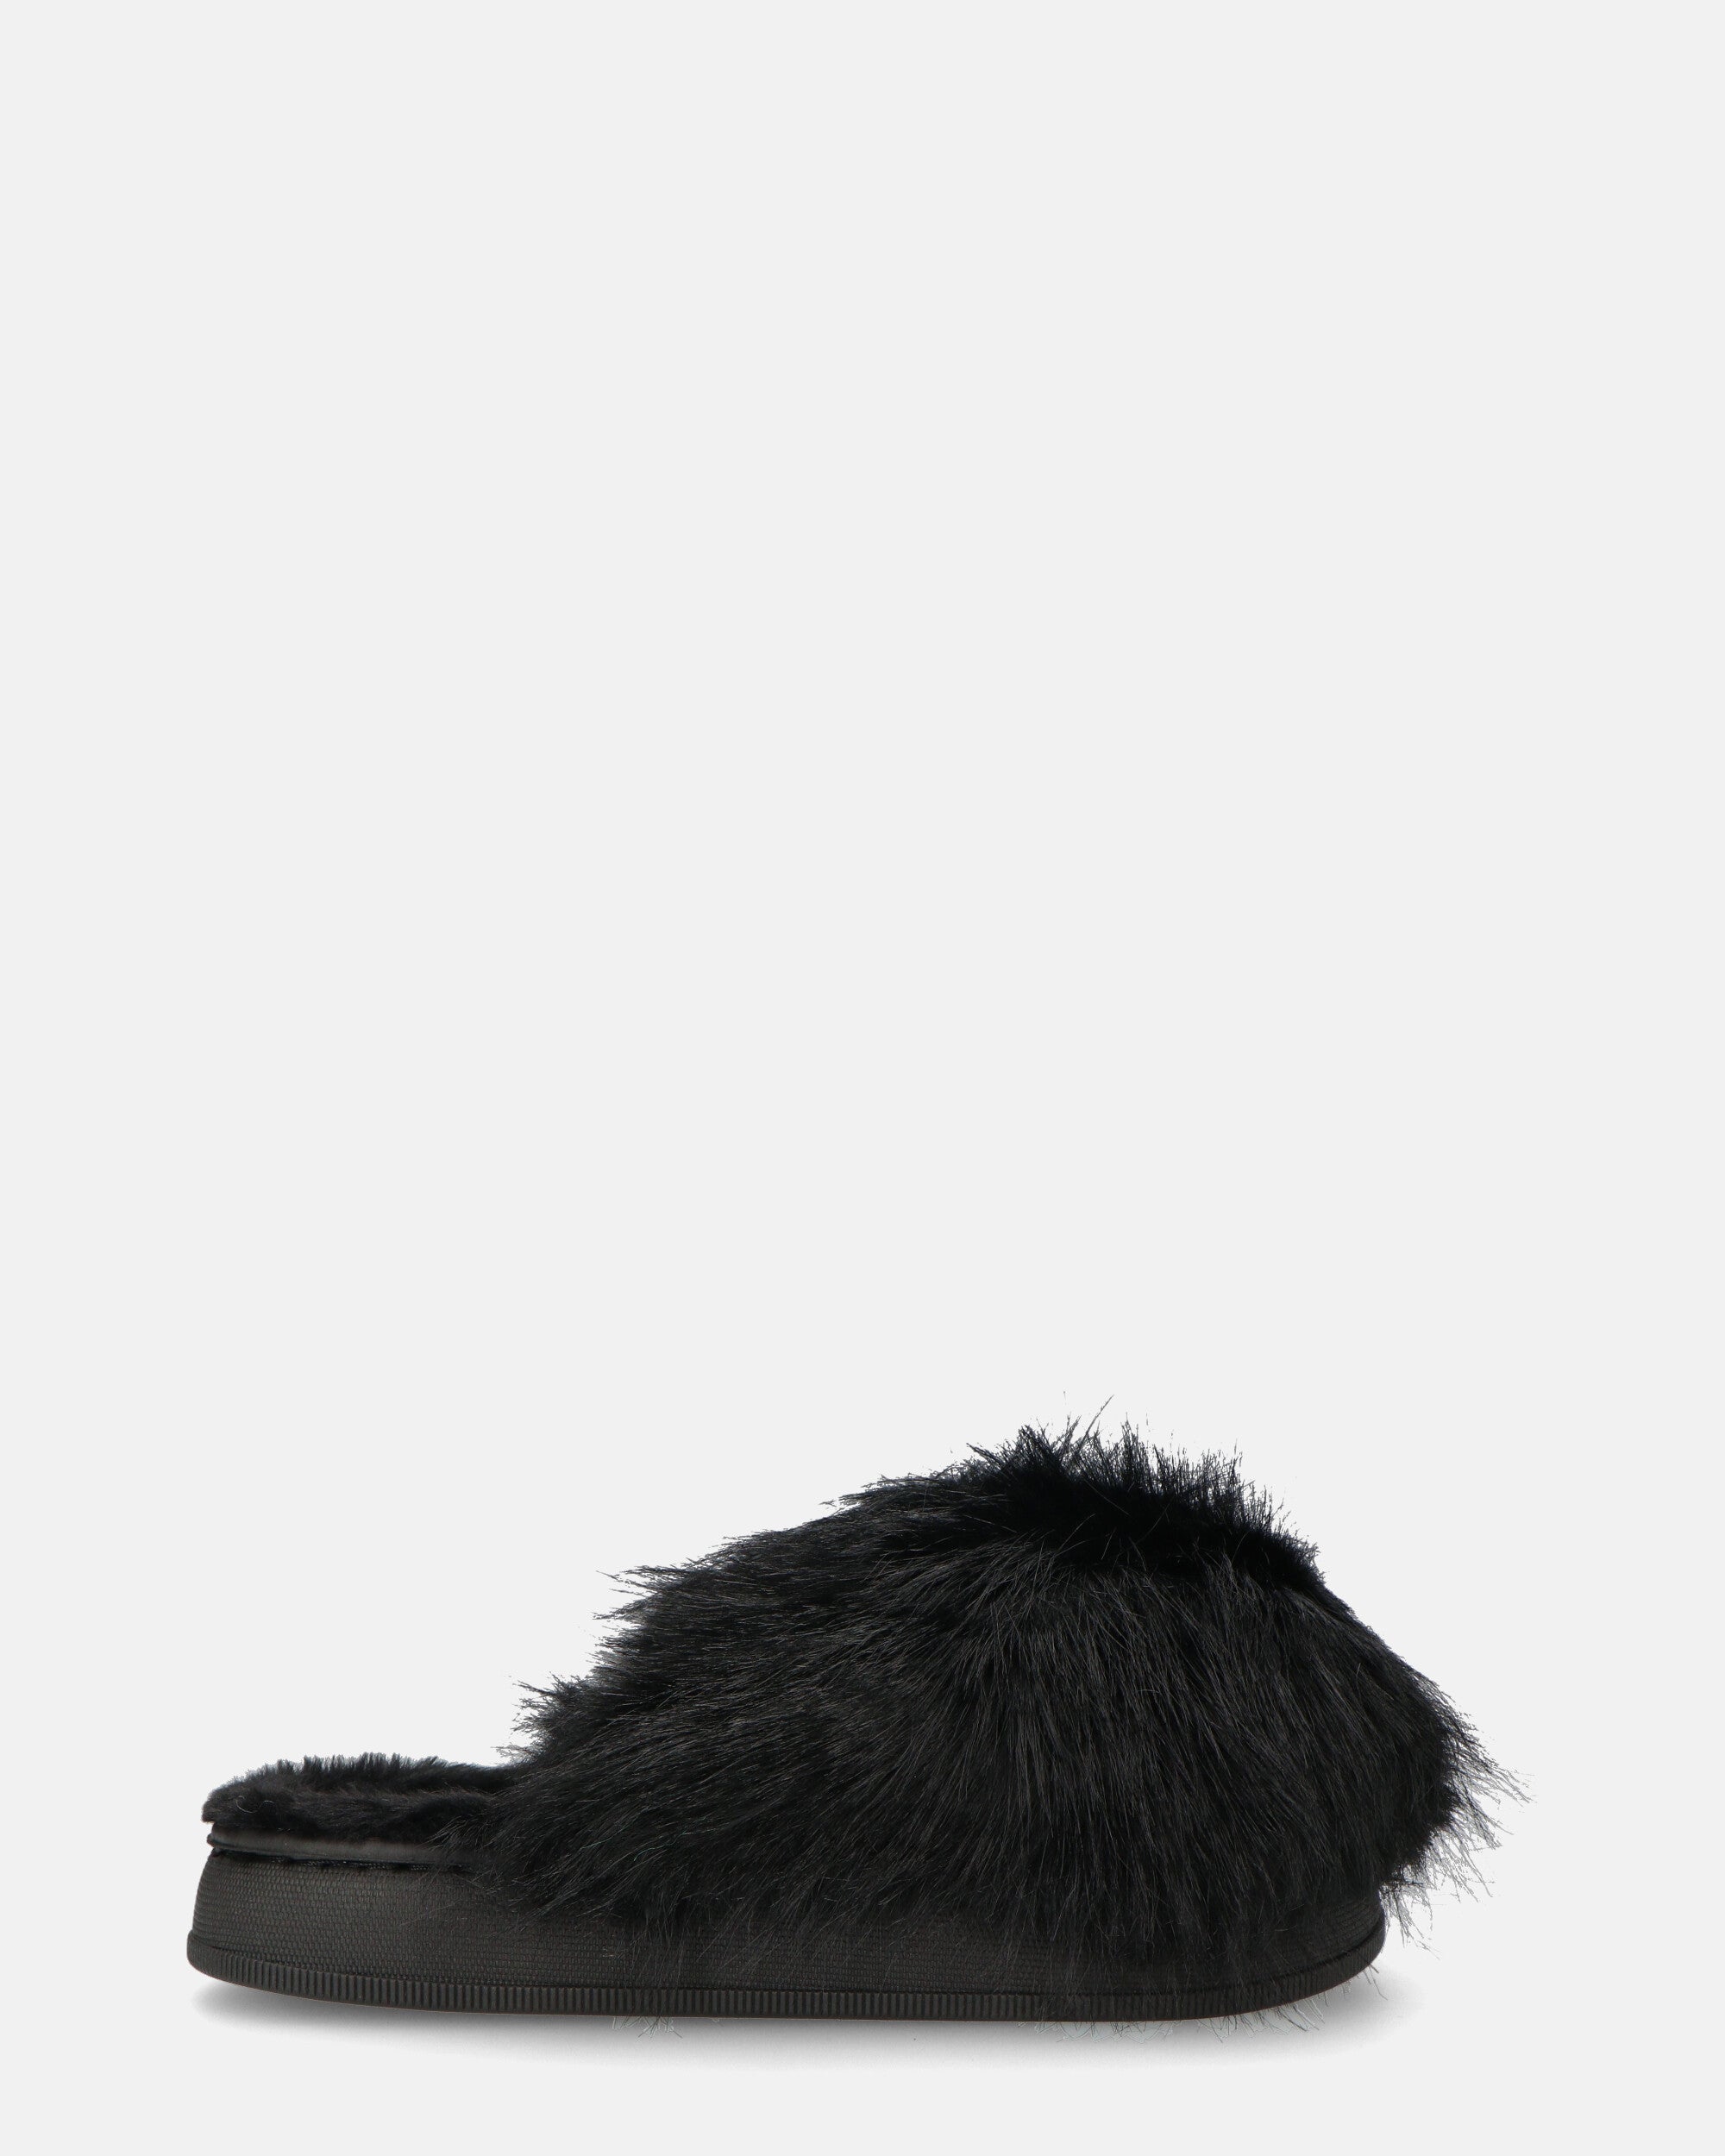 STAFFI - black fur slippers